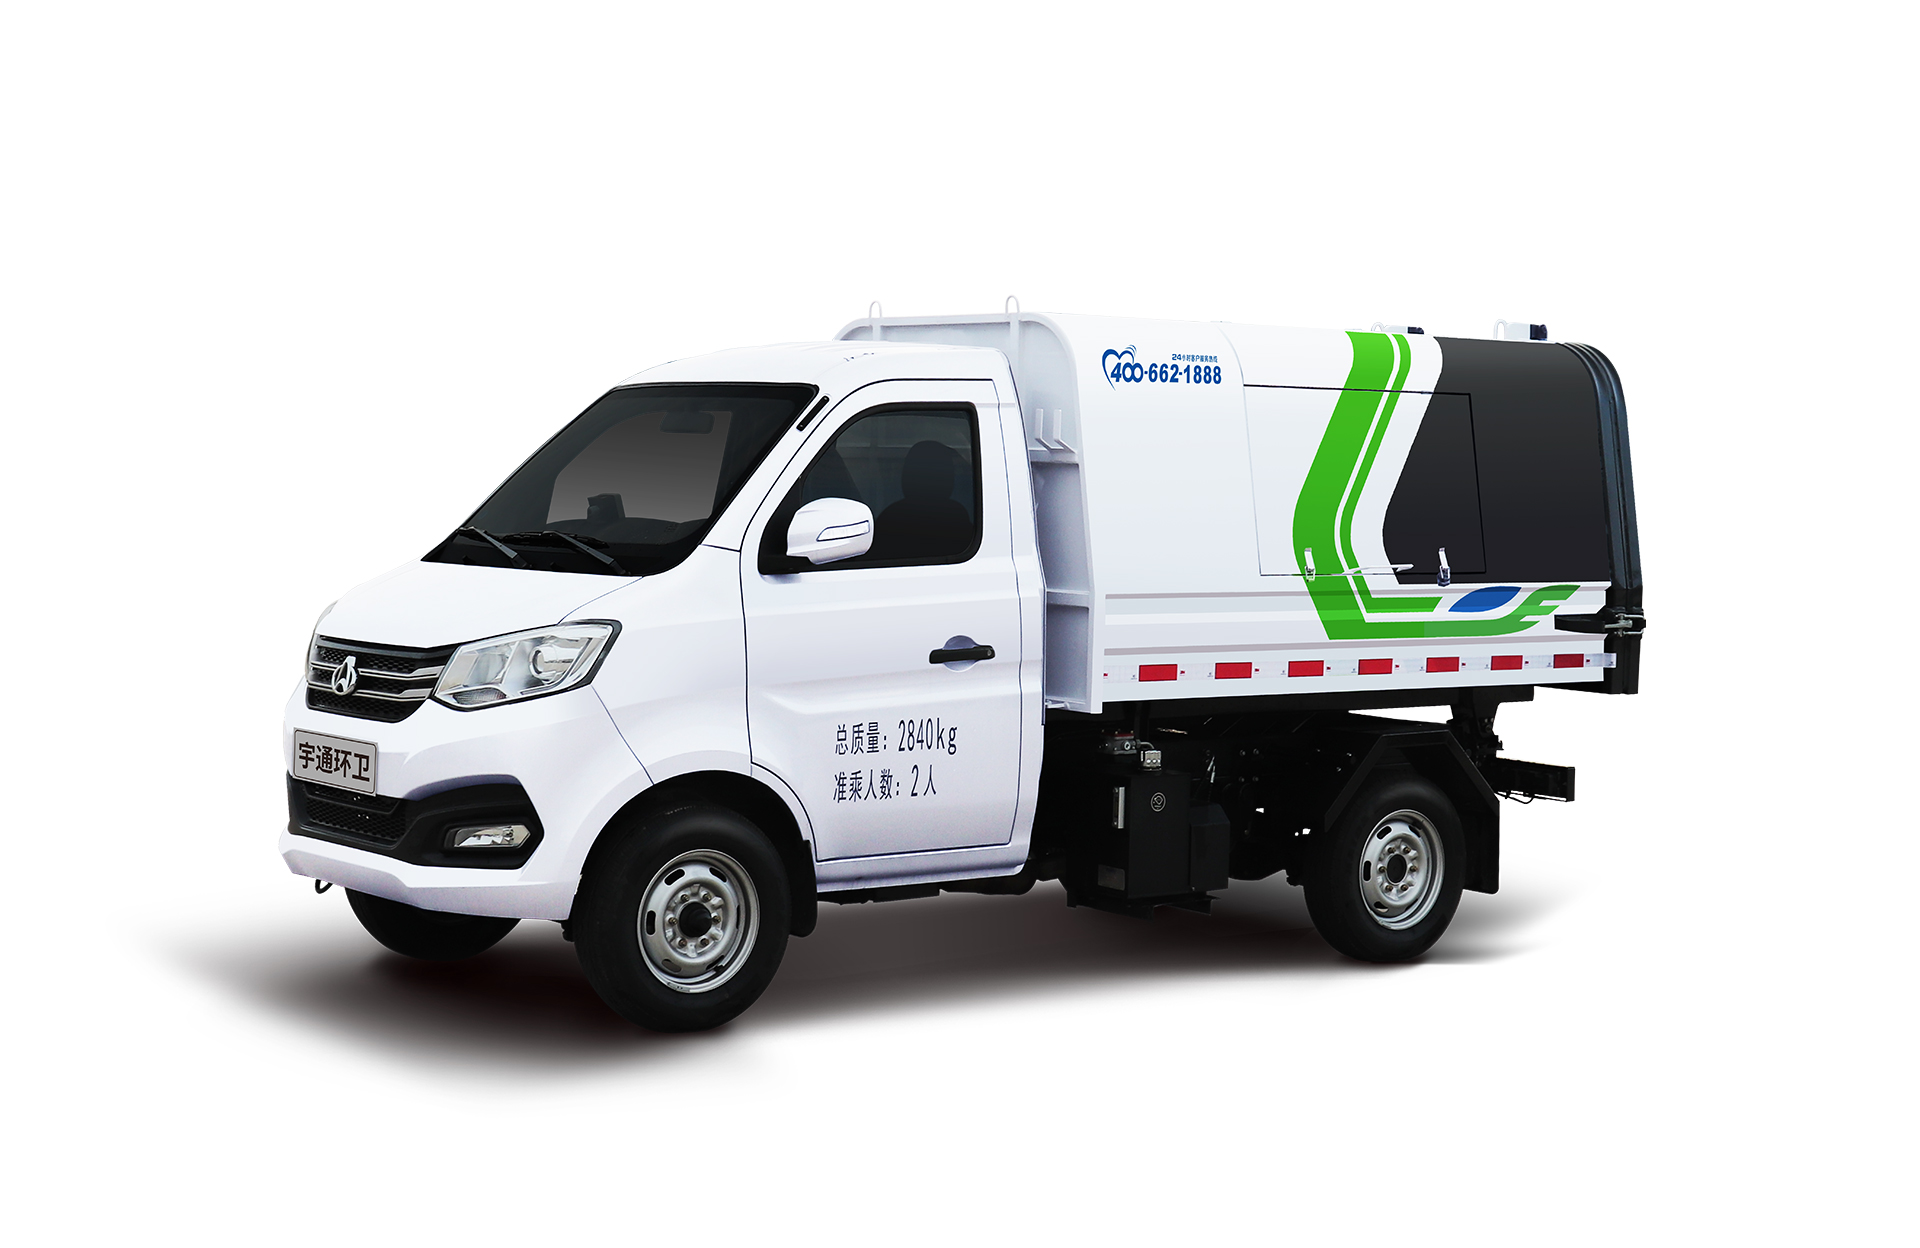 3t自卸式垃圾車 宇通環衛自卸垃圾車主要具備小巧靈活、密封性好、裝載能力強等主要特點。